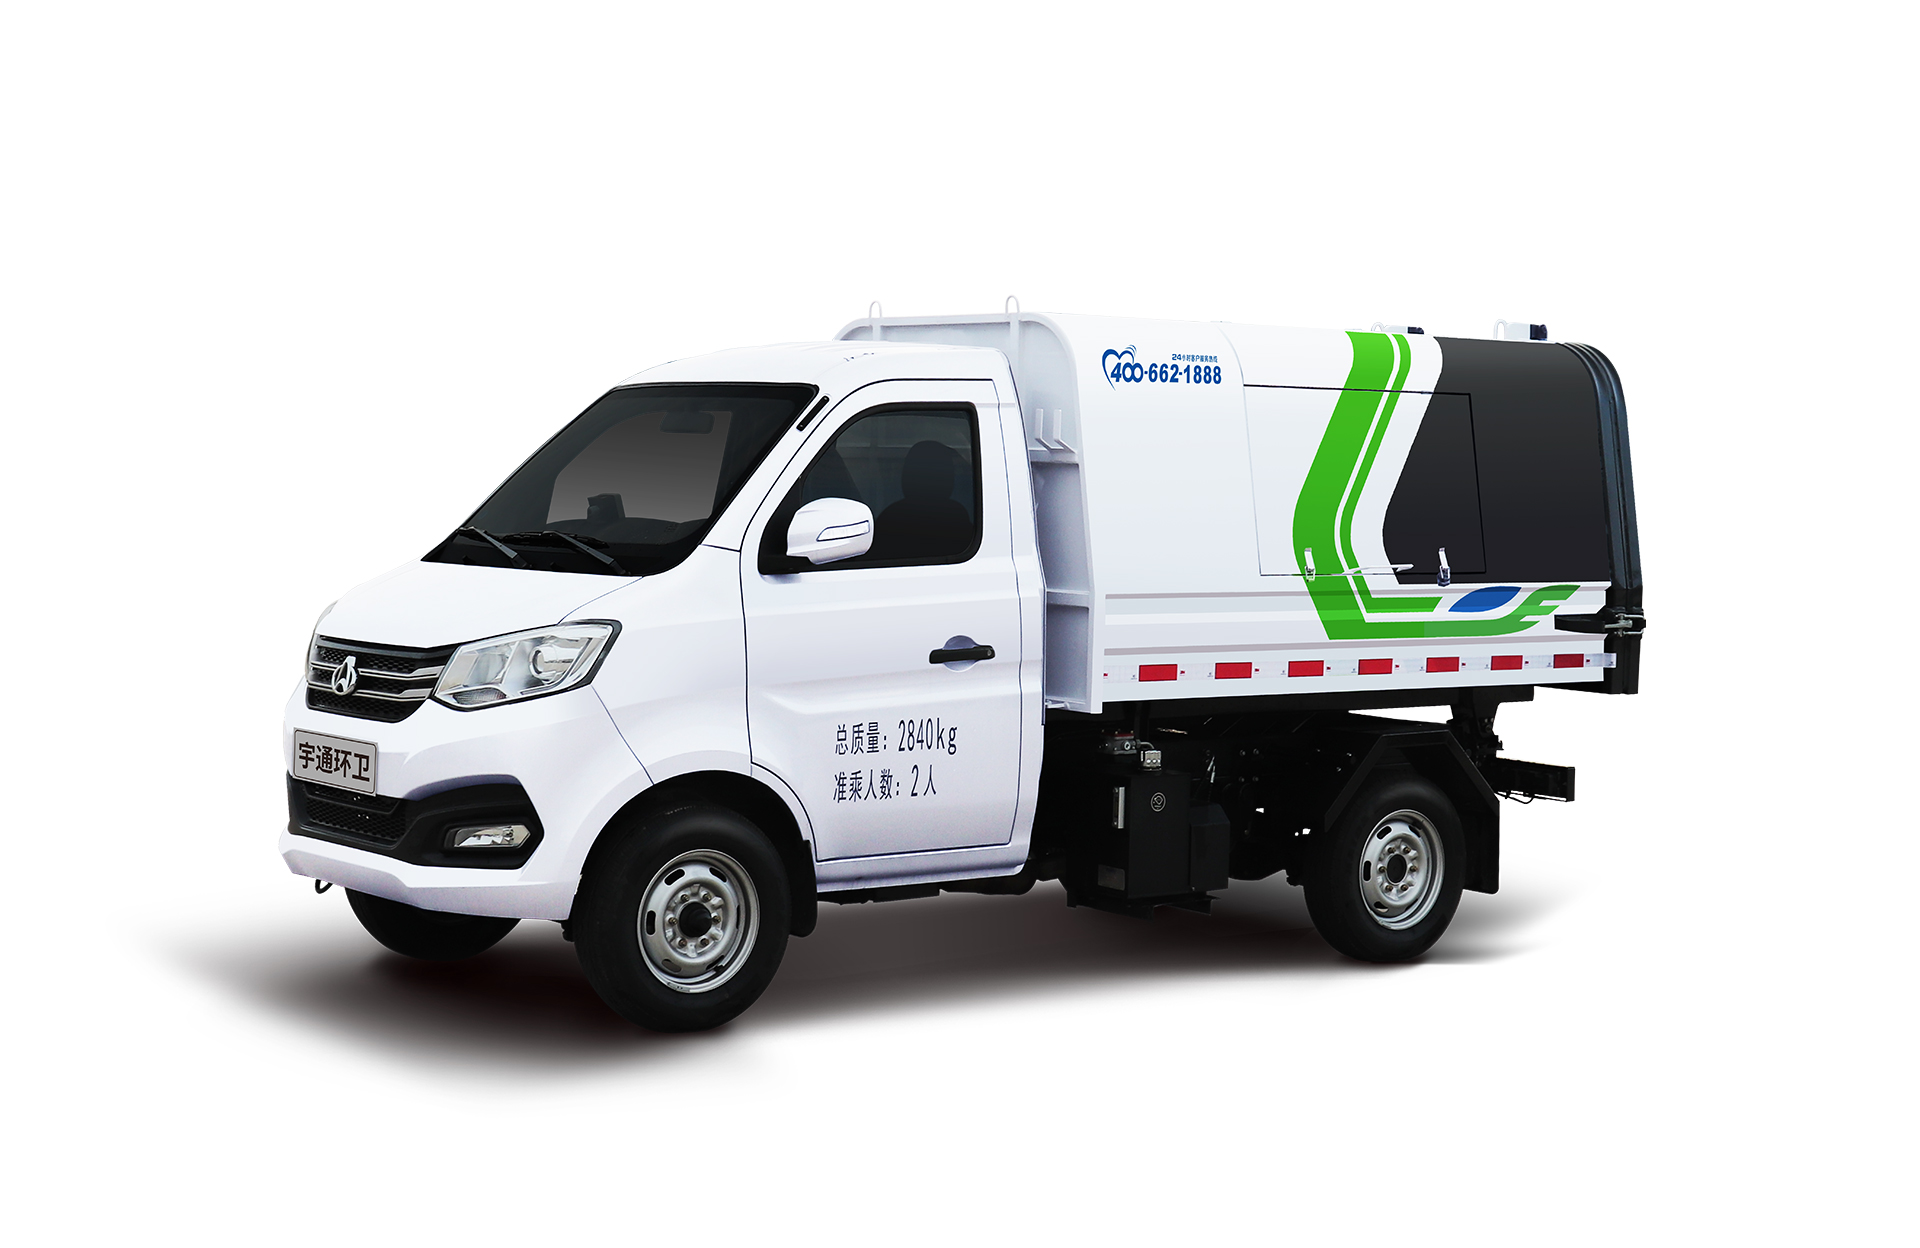 3t自卸式垃圾車 宇通環衛自卸垃圾車主要具備小巧靈活、密封性好、裝載能力強等主要特點。